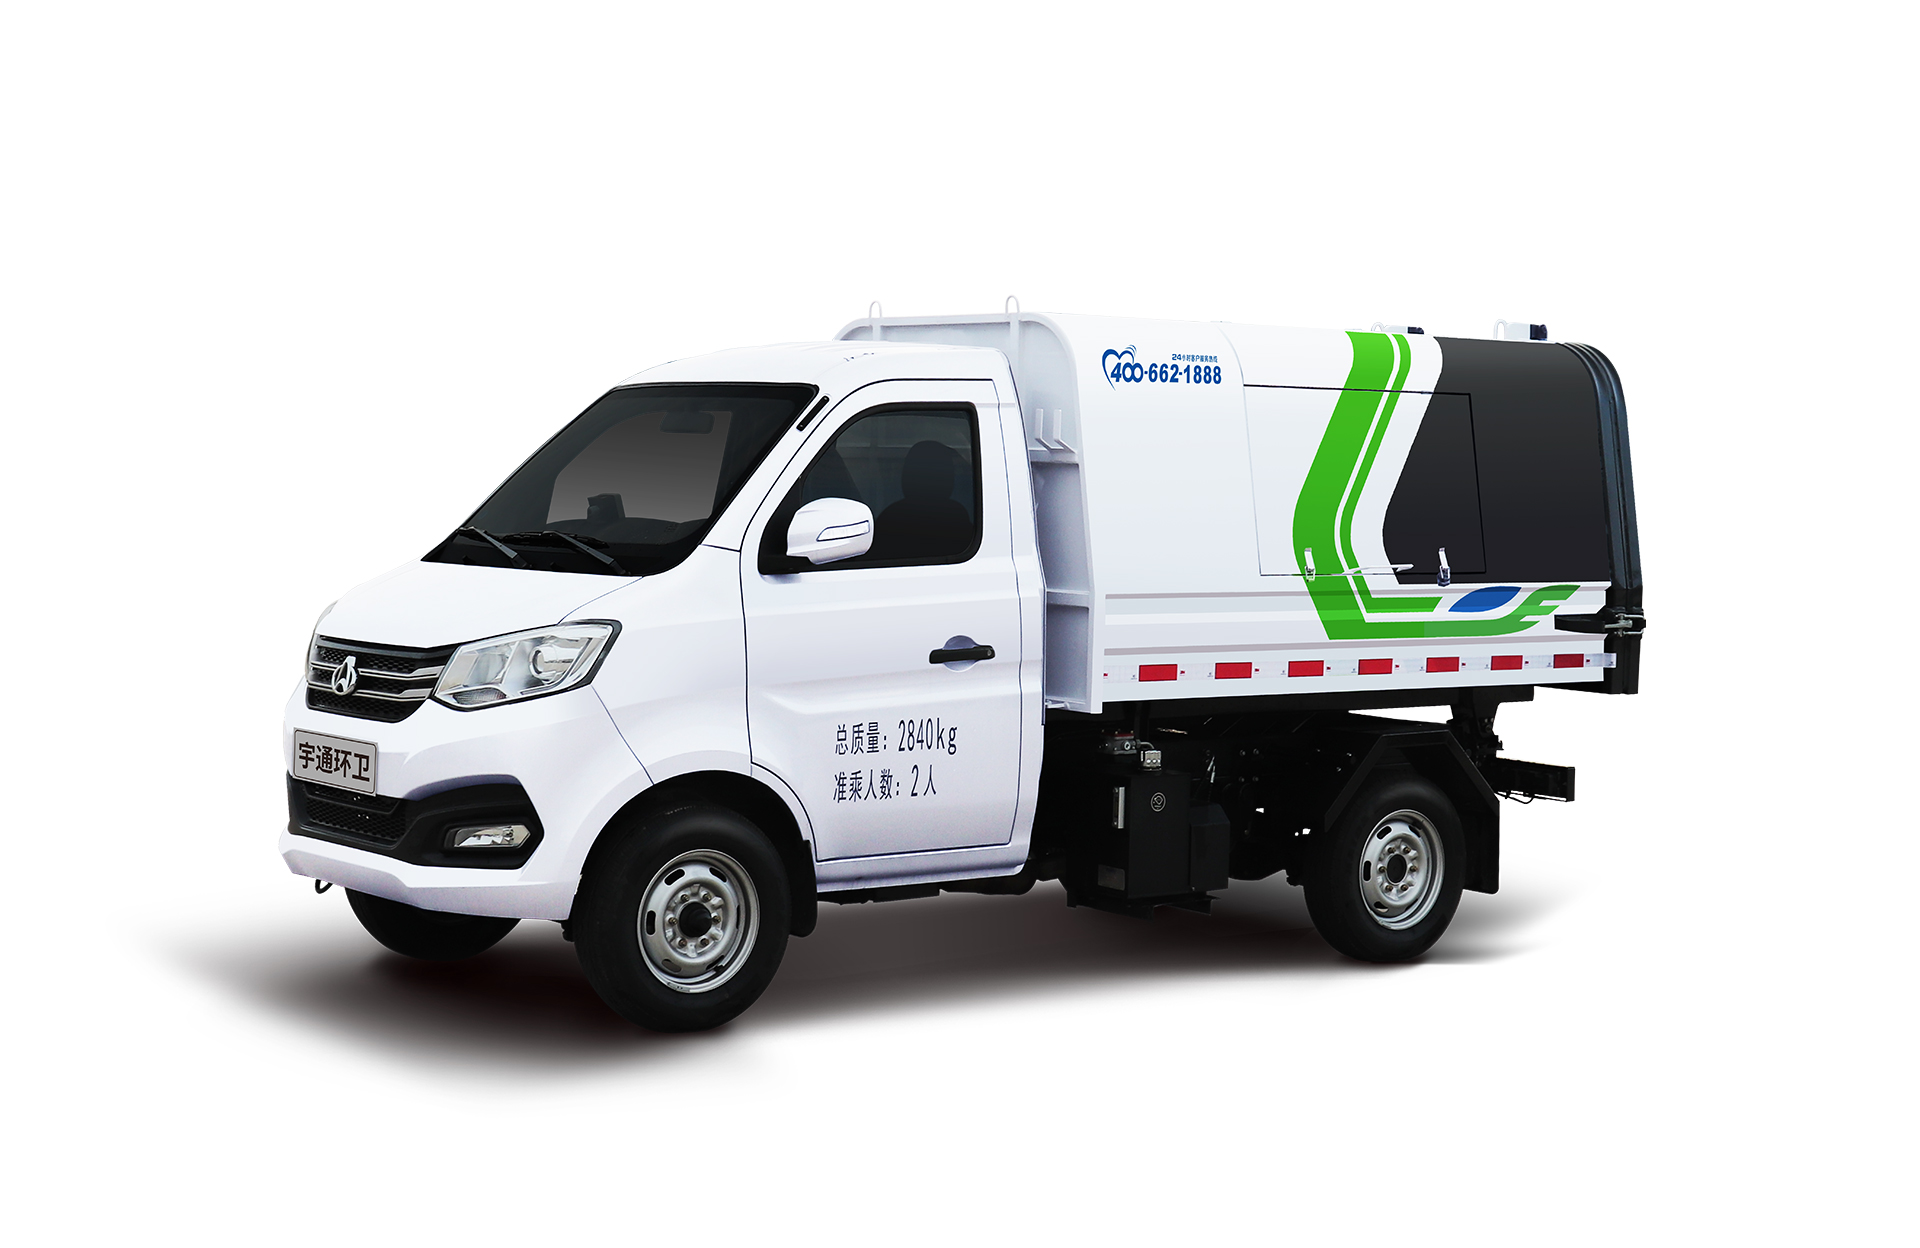 3t自卸式垃圾車 宇通環衛自卸垃圾車主要具備小巧靈活、密封性好、裝載能力強等主要特點。